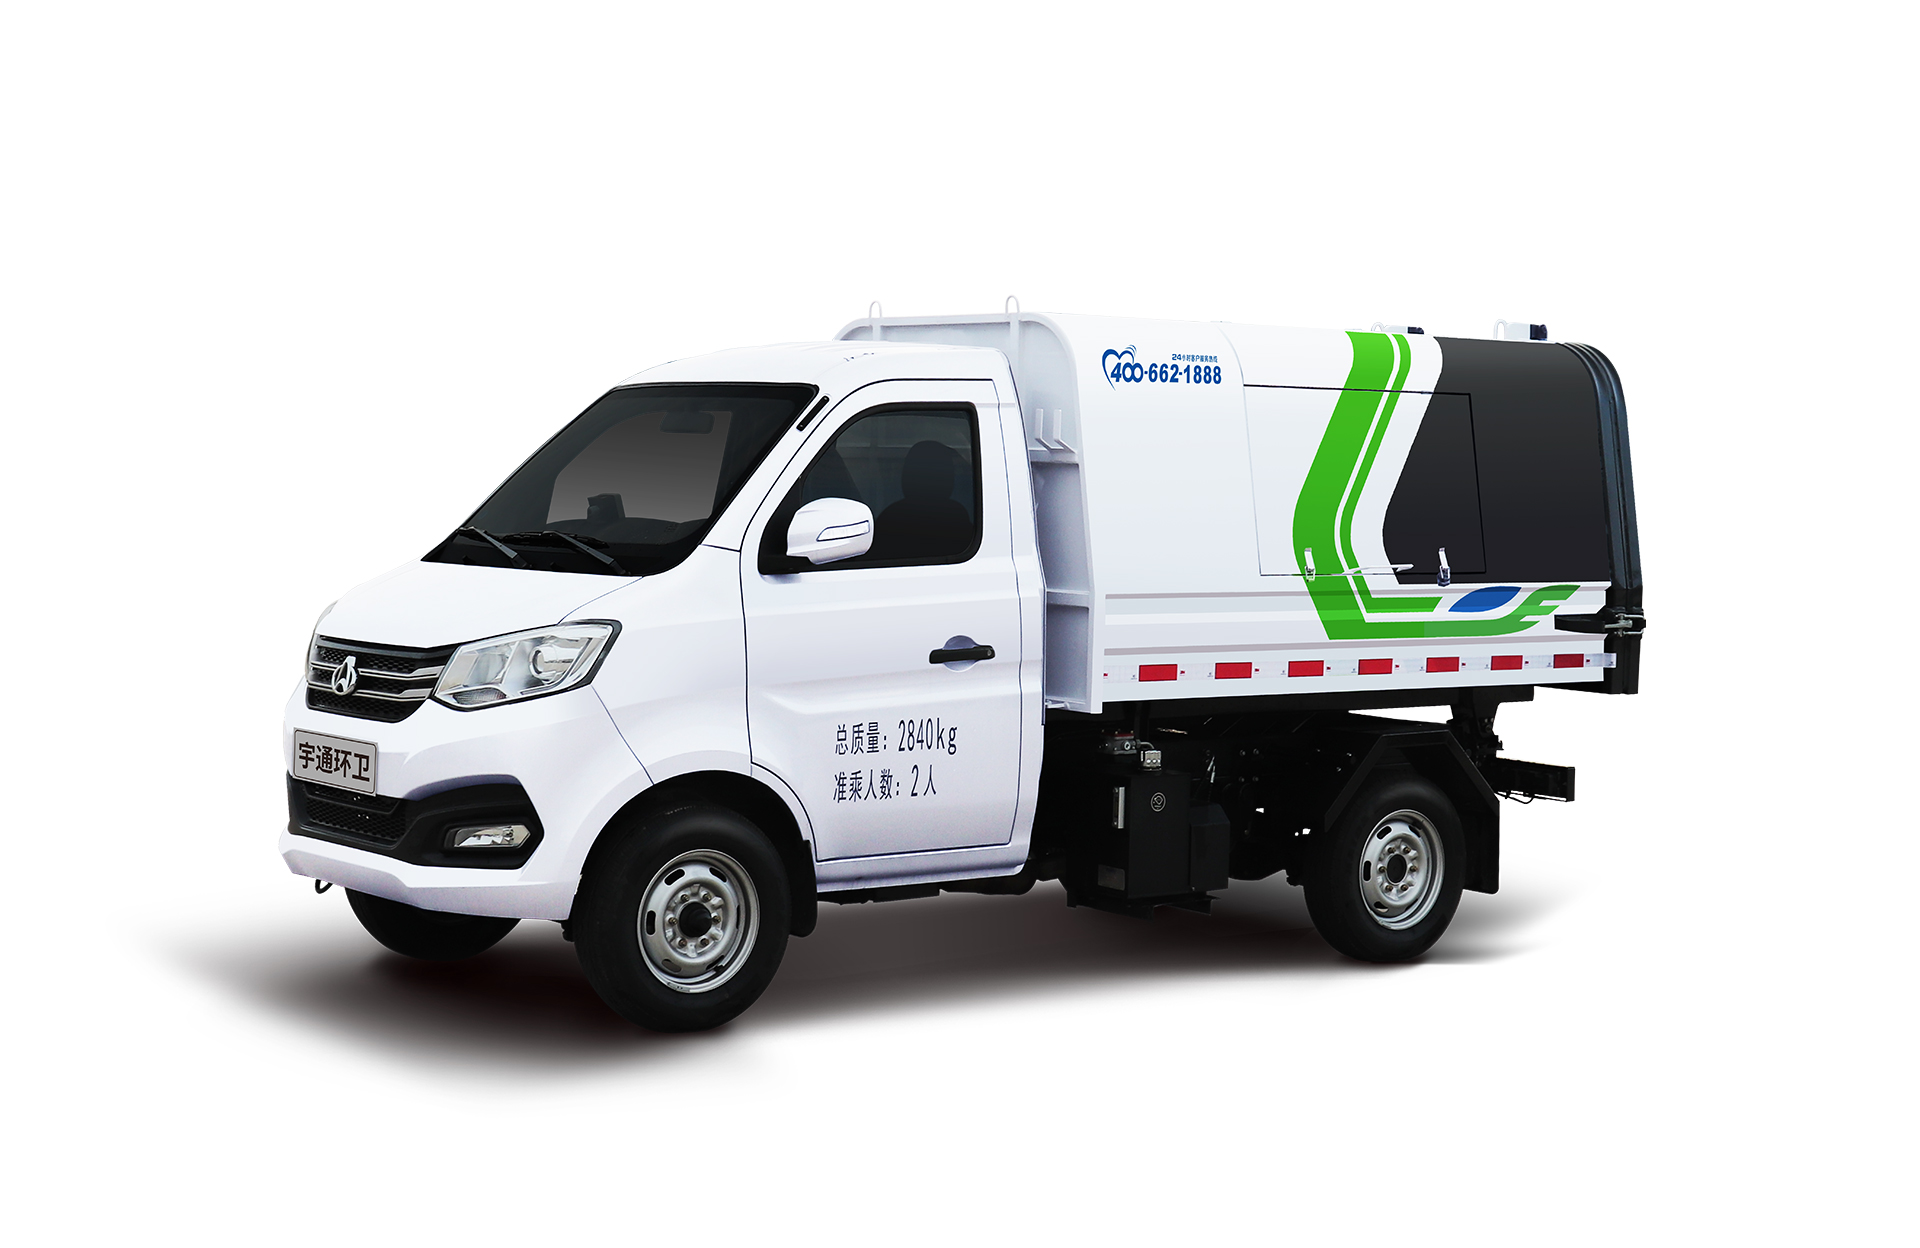 3t自卸式垃圾車 宇通環衛自卸垃圾車主要具備小巧靈活、密封性好、裝載能力強等主要特點。